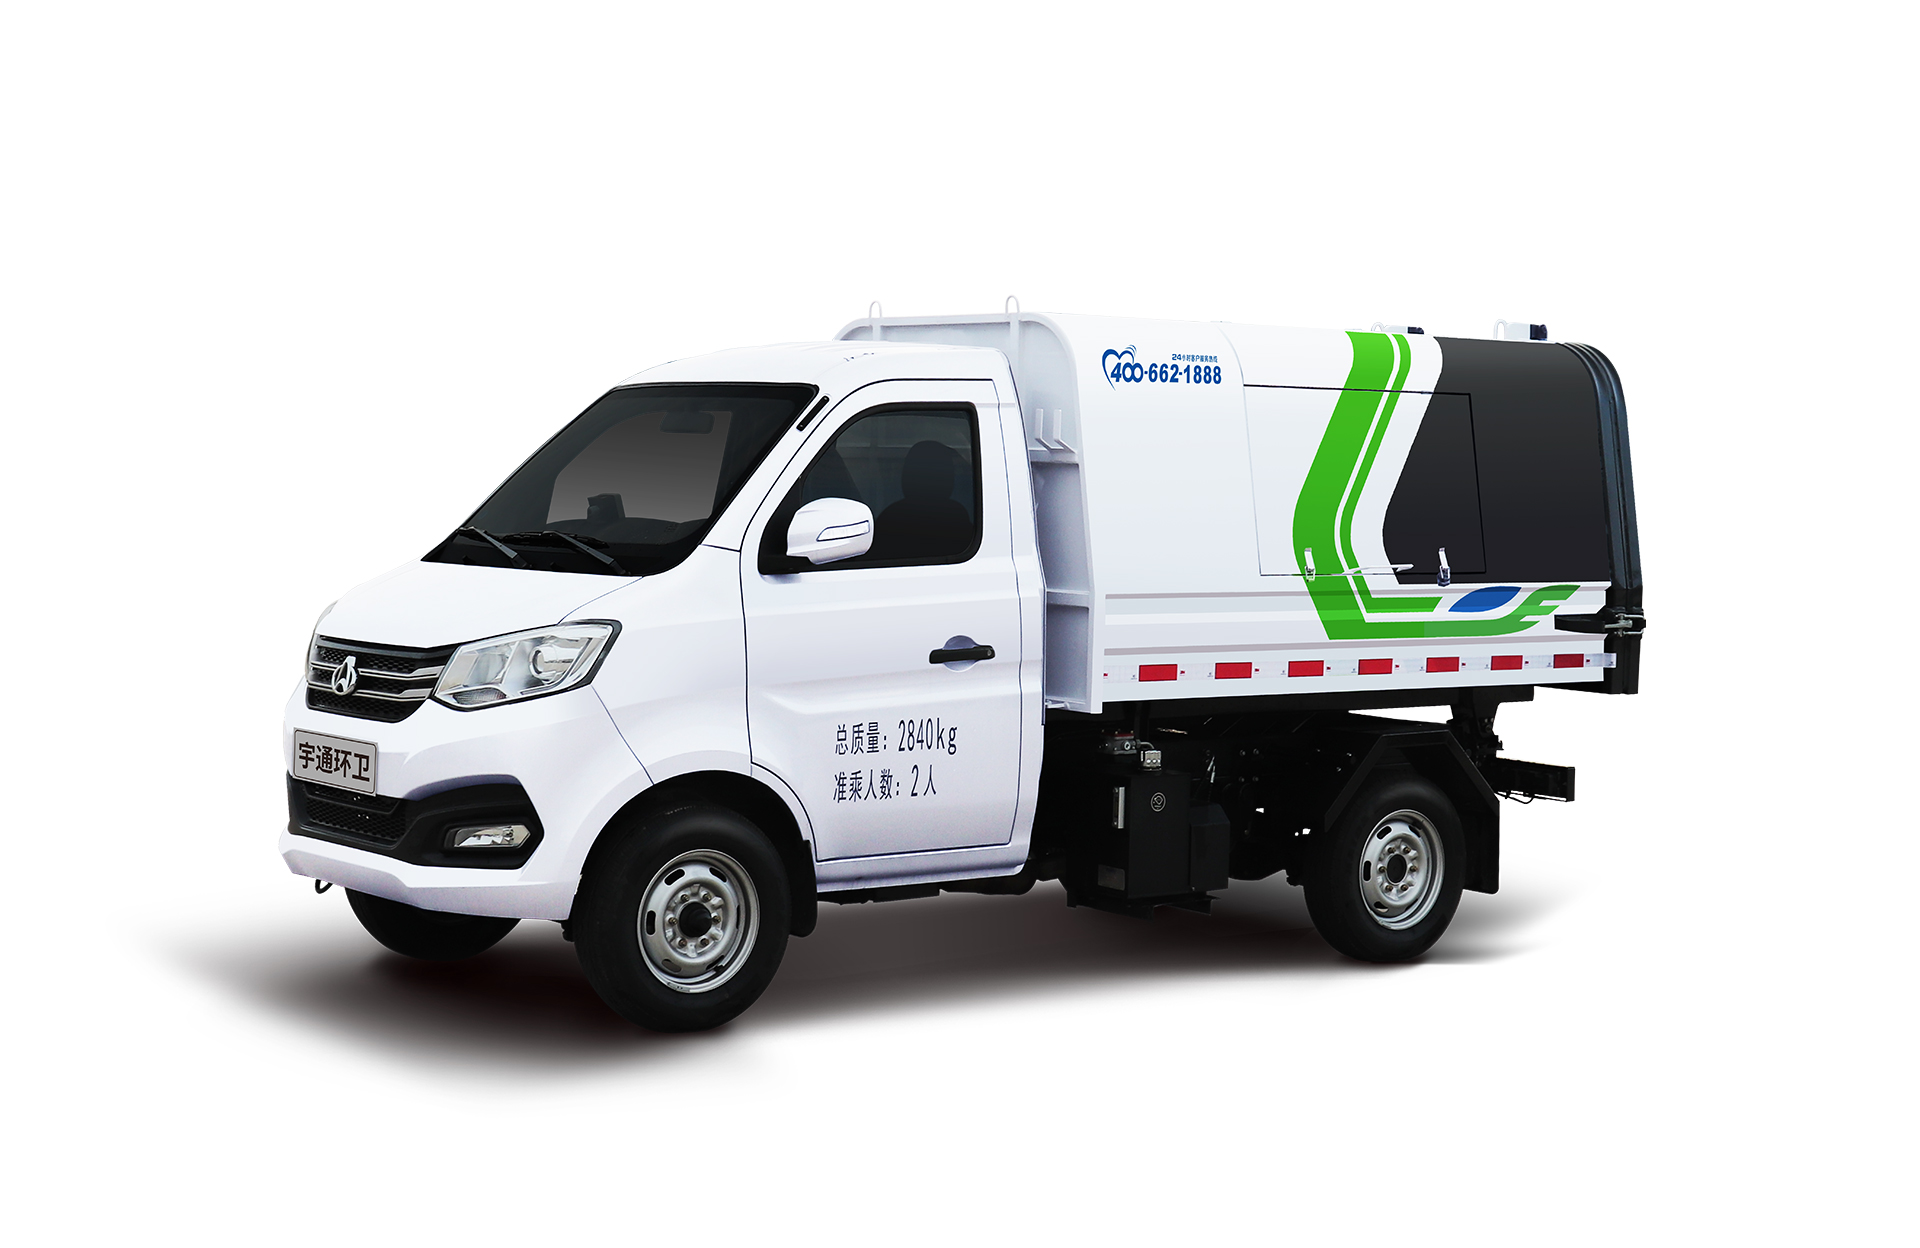 3t自卸式垃圾車 宇通環衛自卸垃圾車主要具備小巧靈活、密封性好、裝載能力強等主要特點。